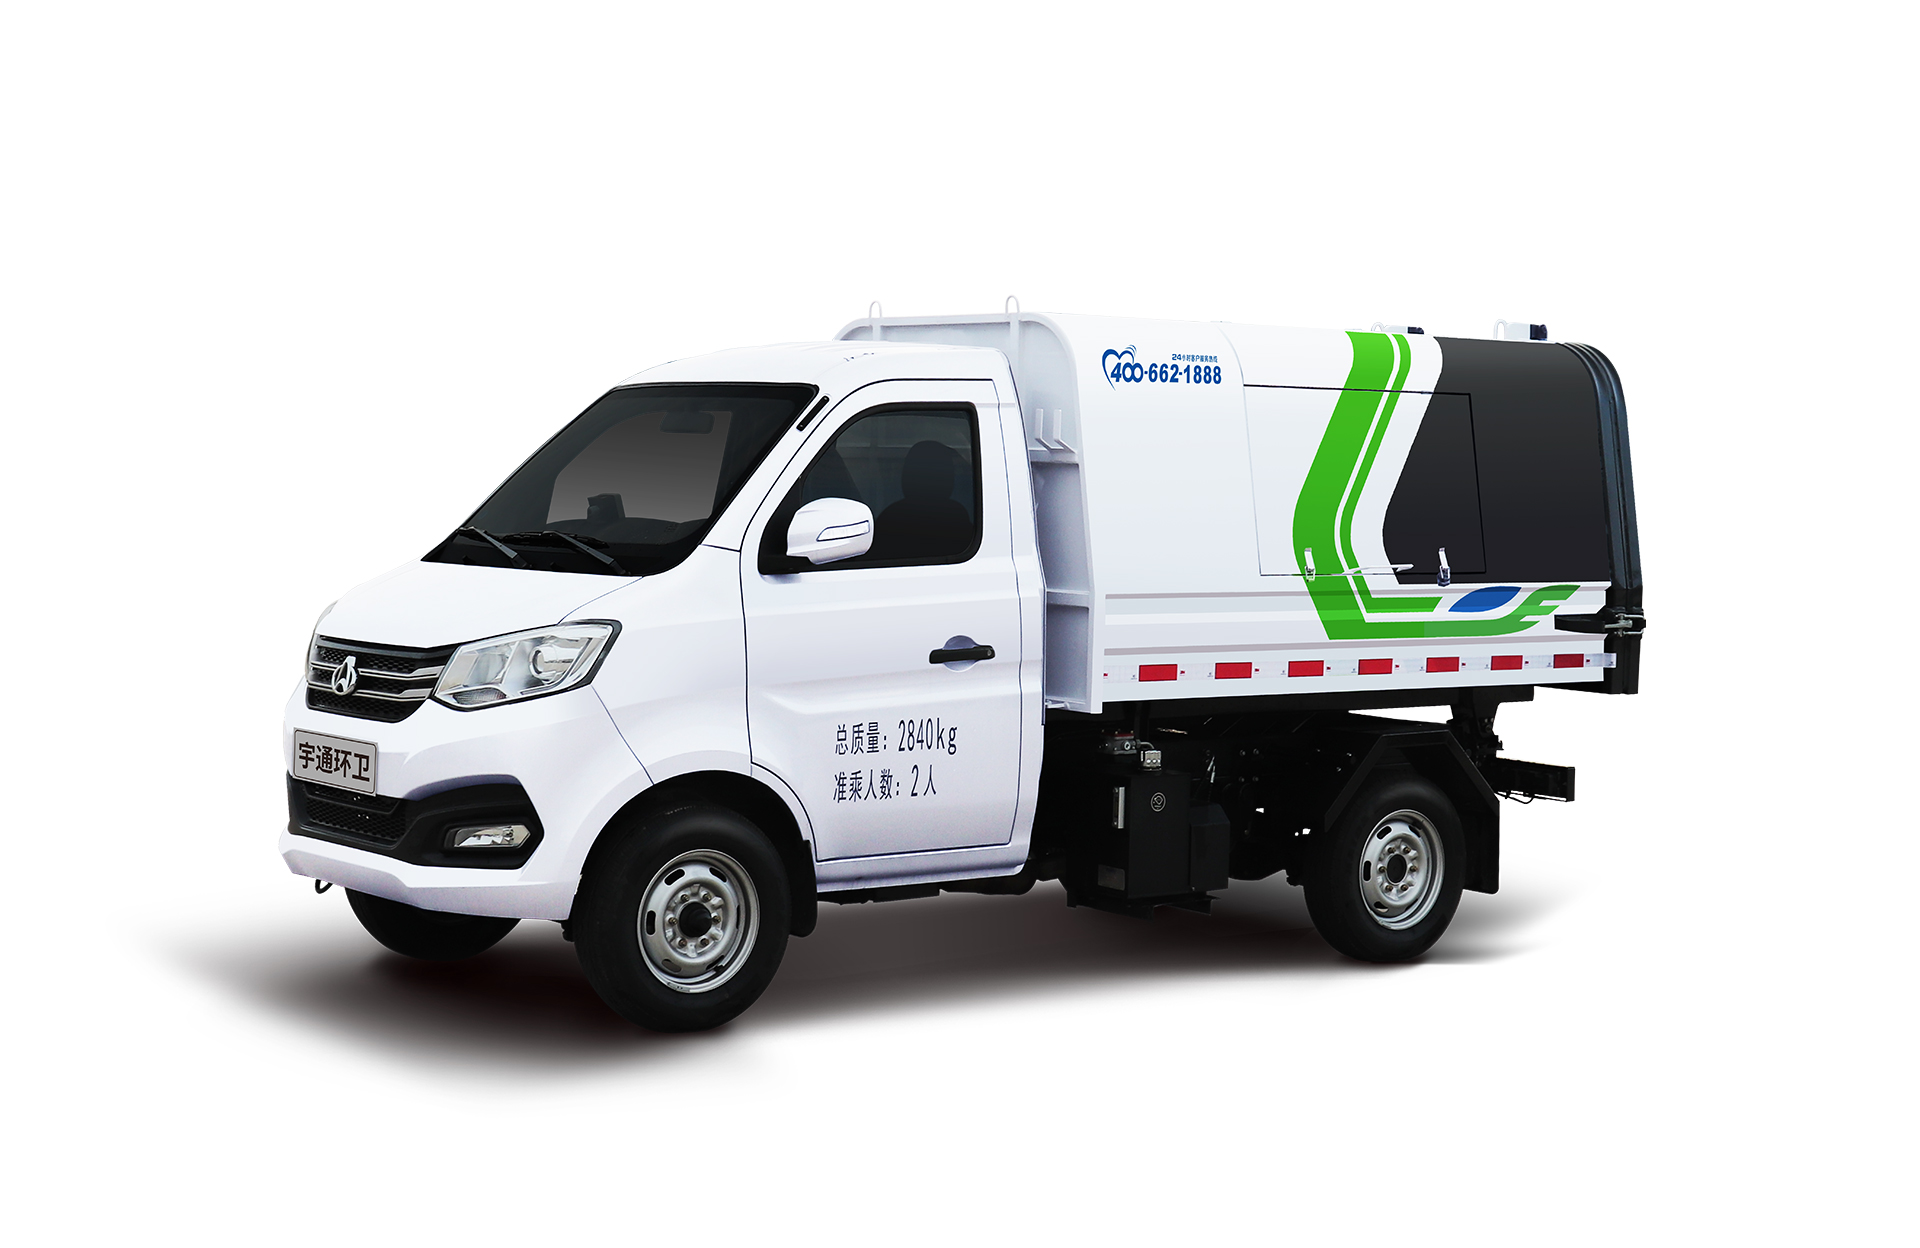 3t自卸式垃圾車 宇通環衛自卸垃圾車主要具備小巧靈活、密封性好、裝載能力強等主要特點。